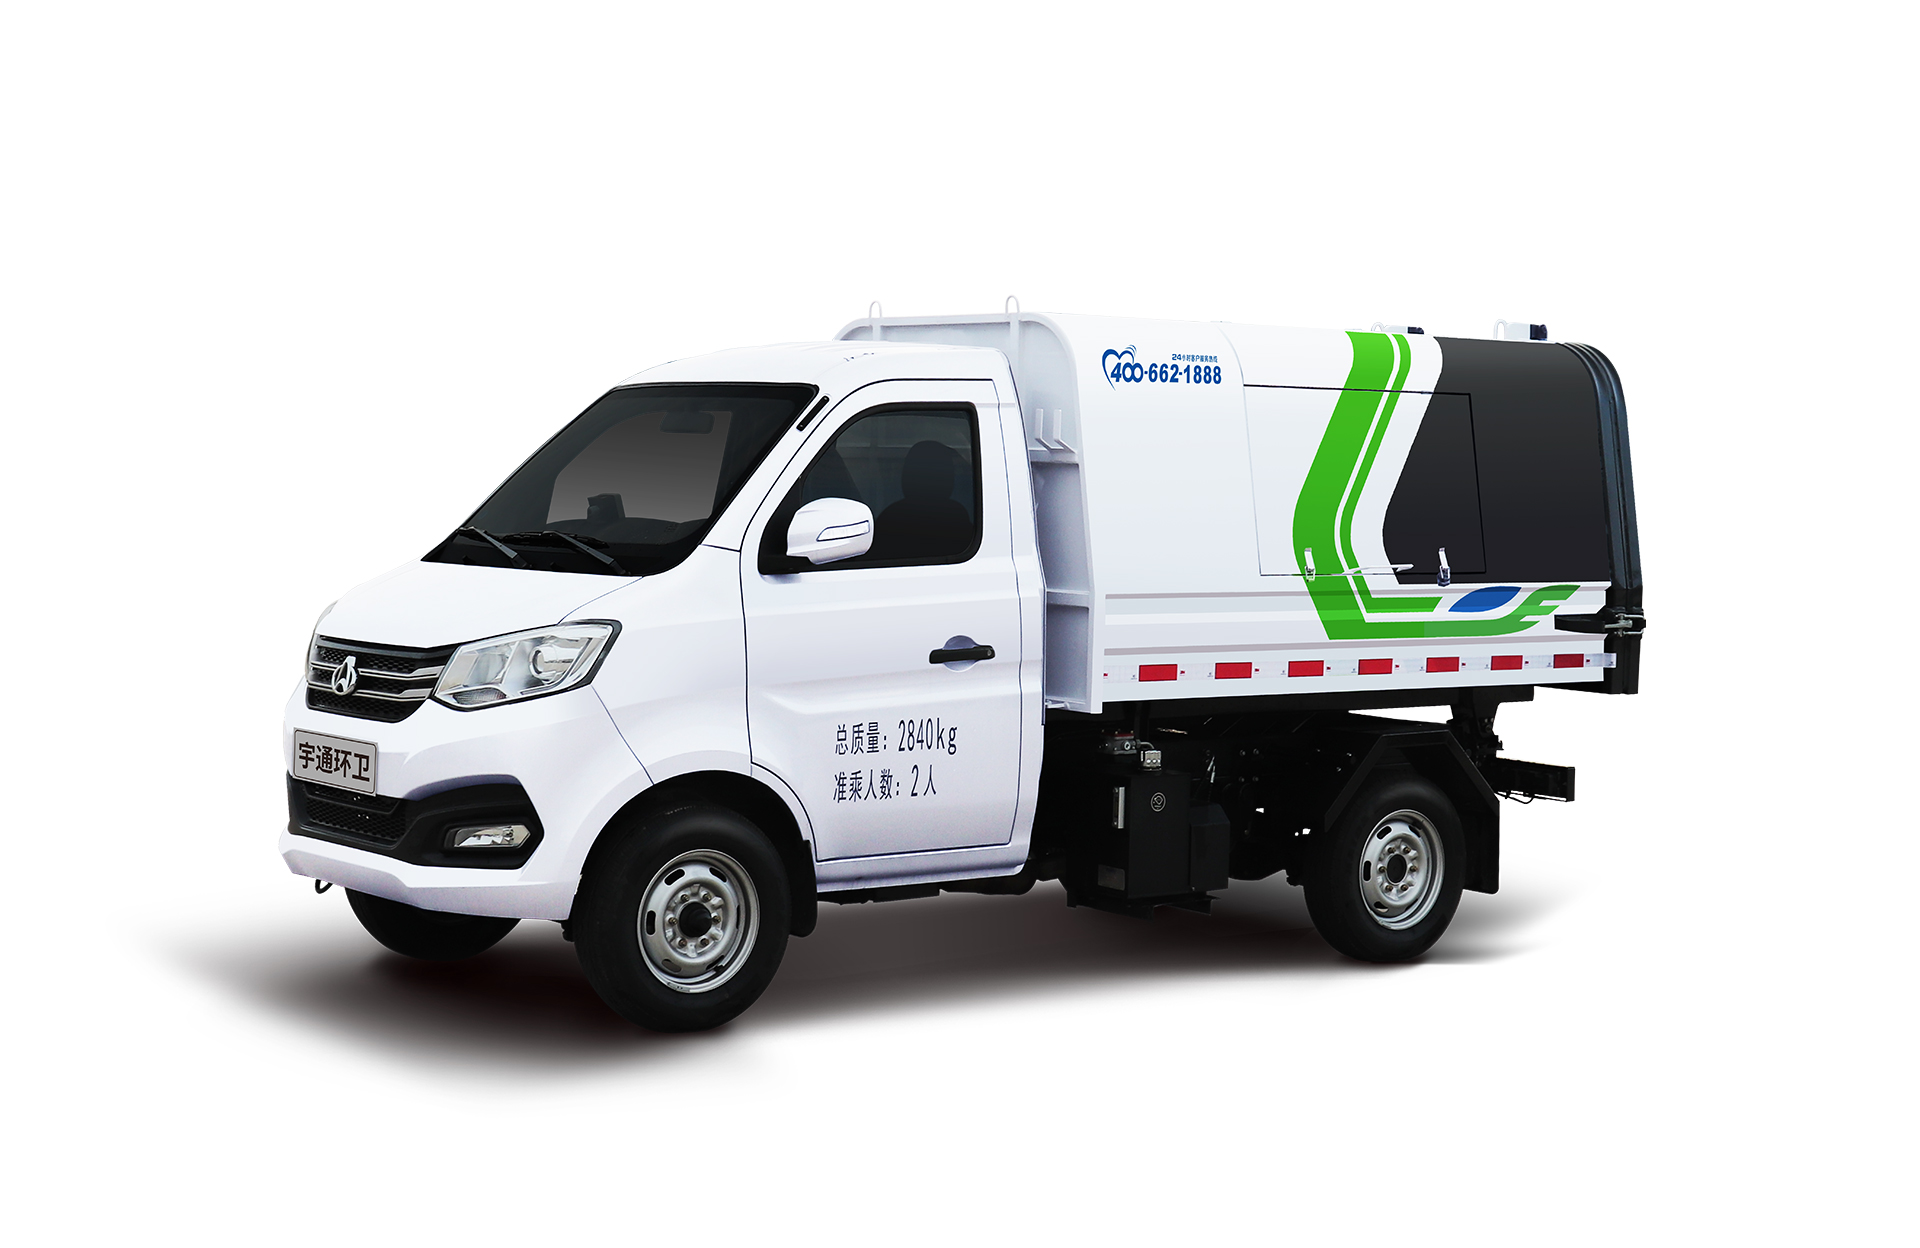 3t自卸式垃圾車 宇通環衛自卸垃圾車主要具備小巧靈活、密封性好、裝載能力強等主要特點。